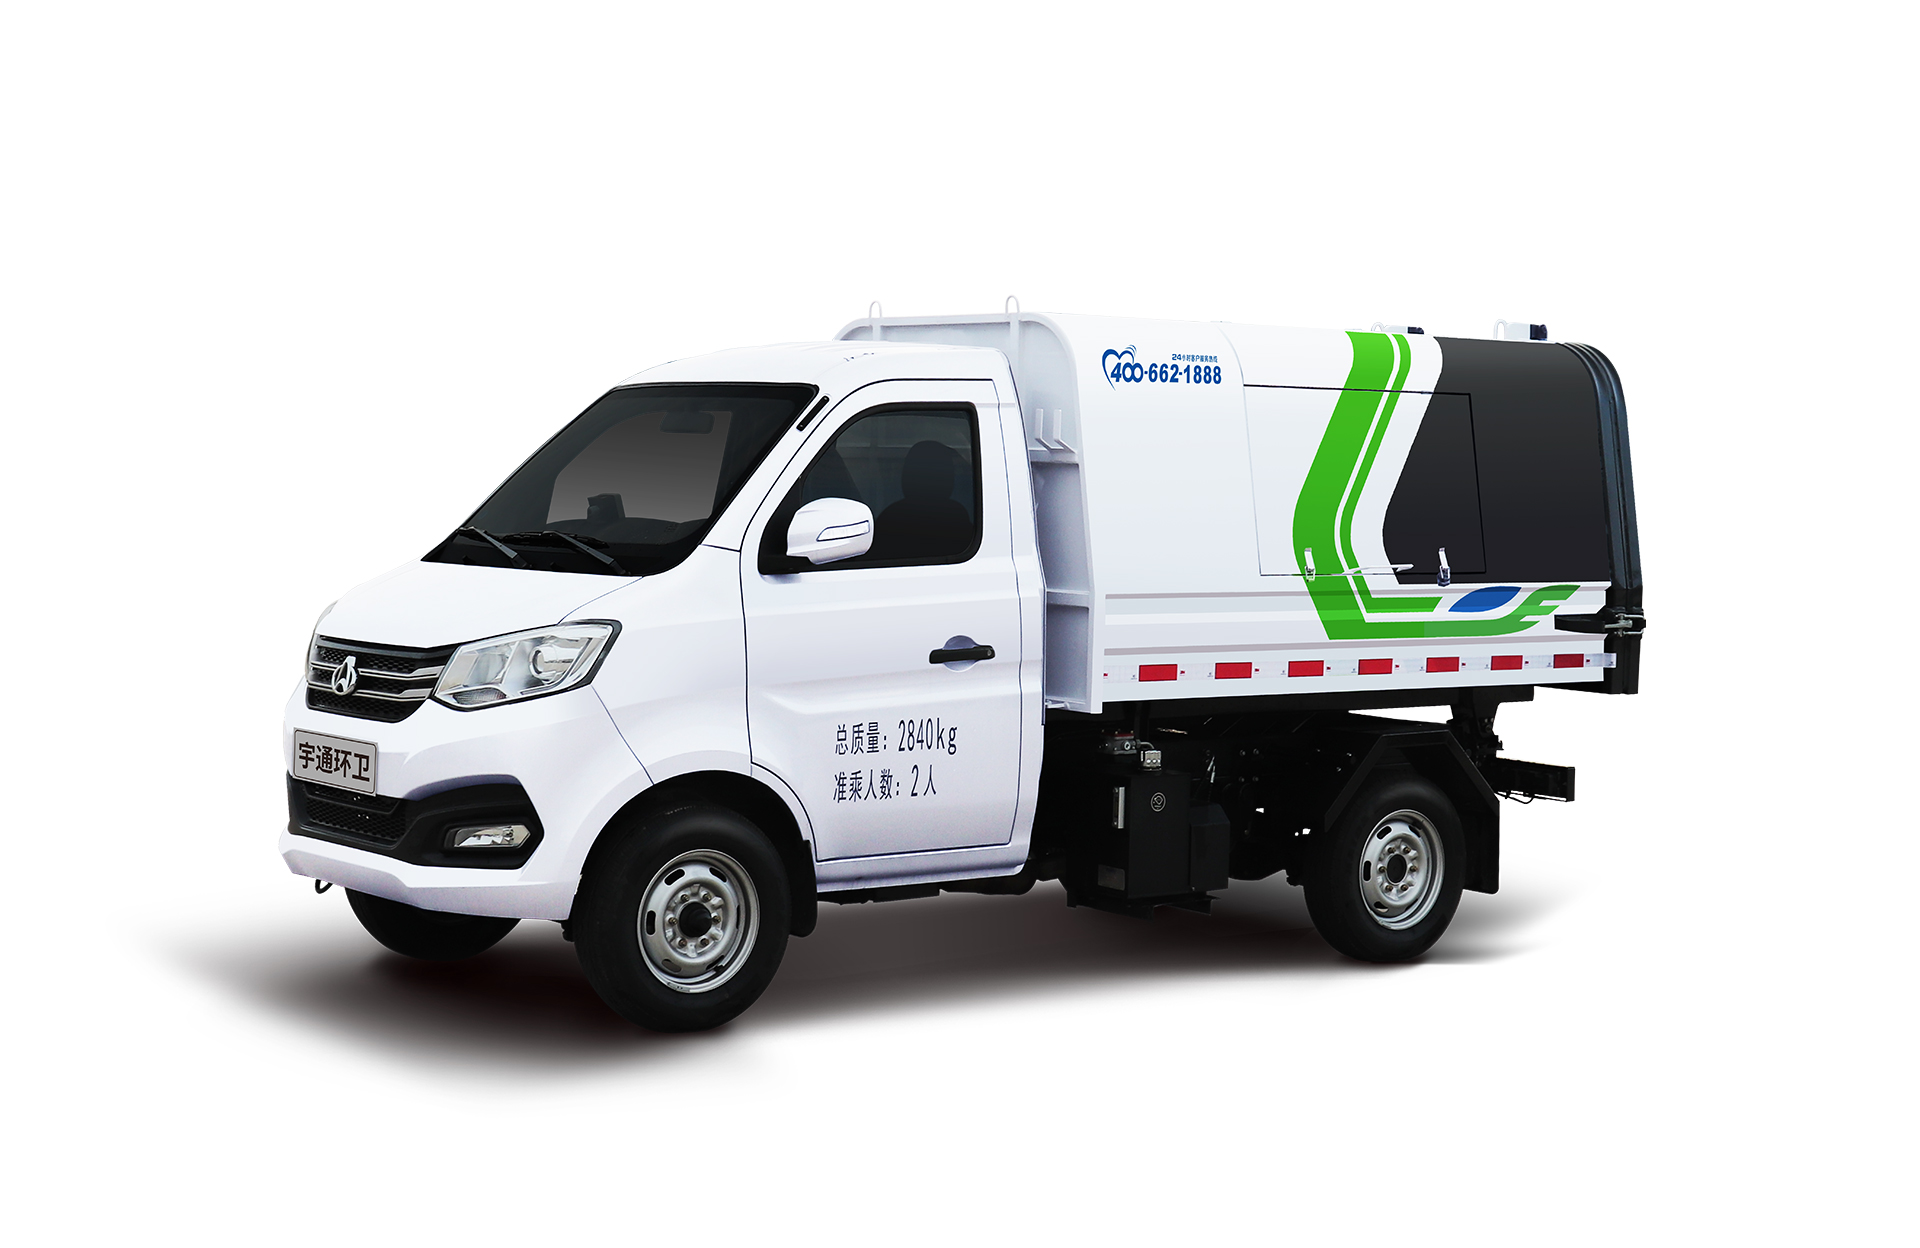 3t自卸式垃圾車 宇通環衛自卸垃圾車主要具備小巧靈活、密封性好、裝載能力強等主要特點。